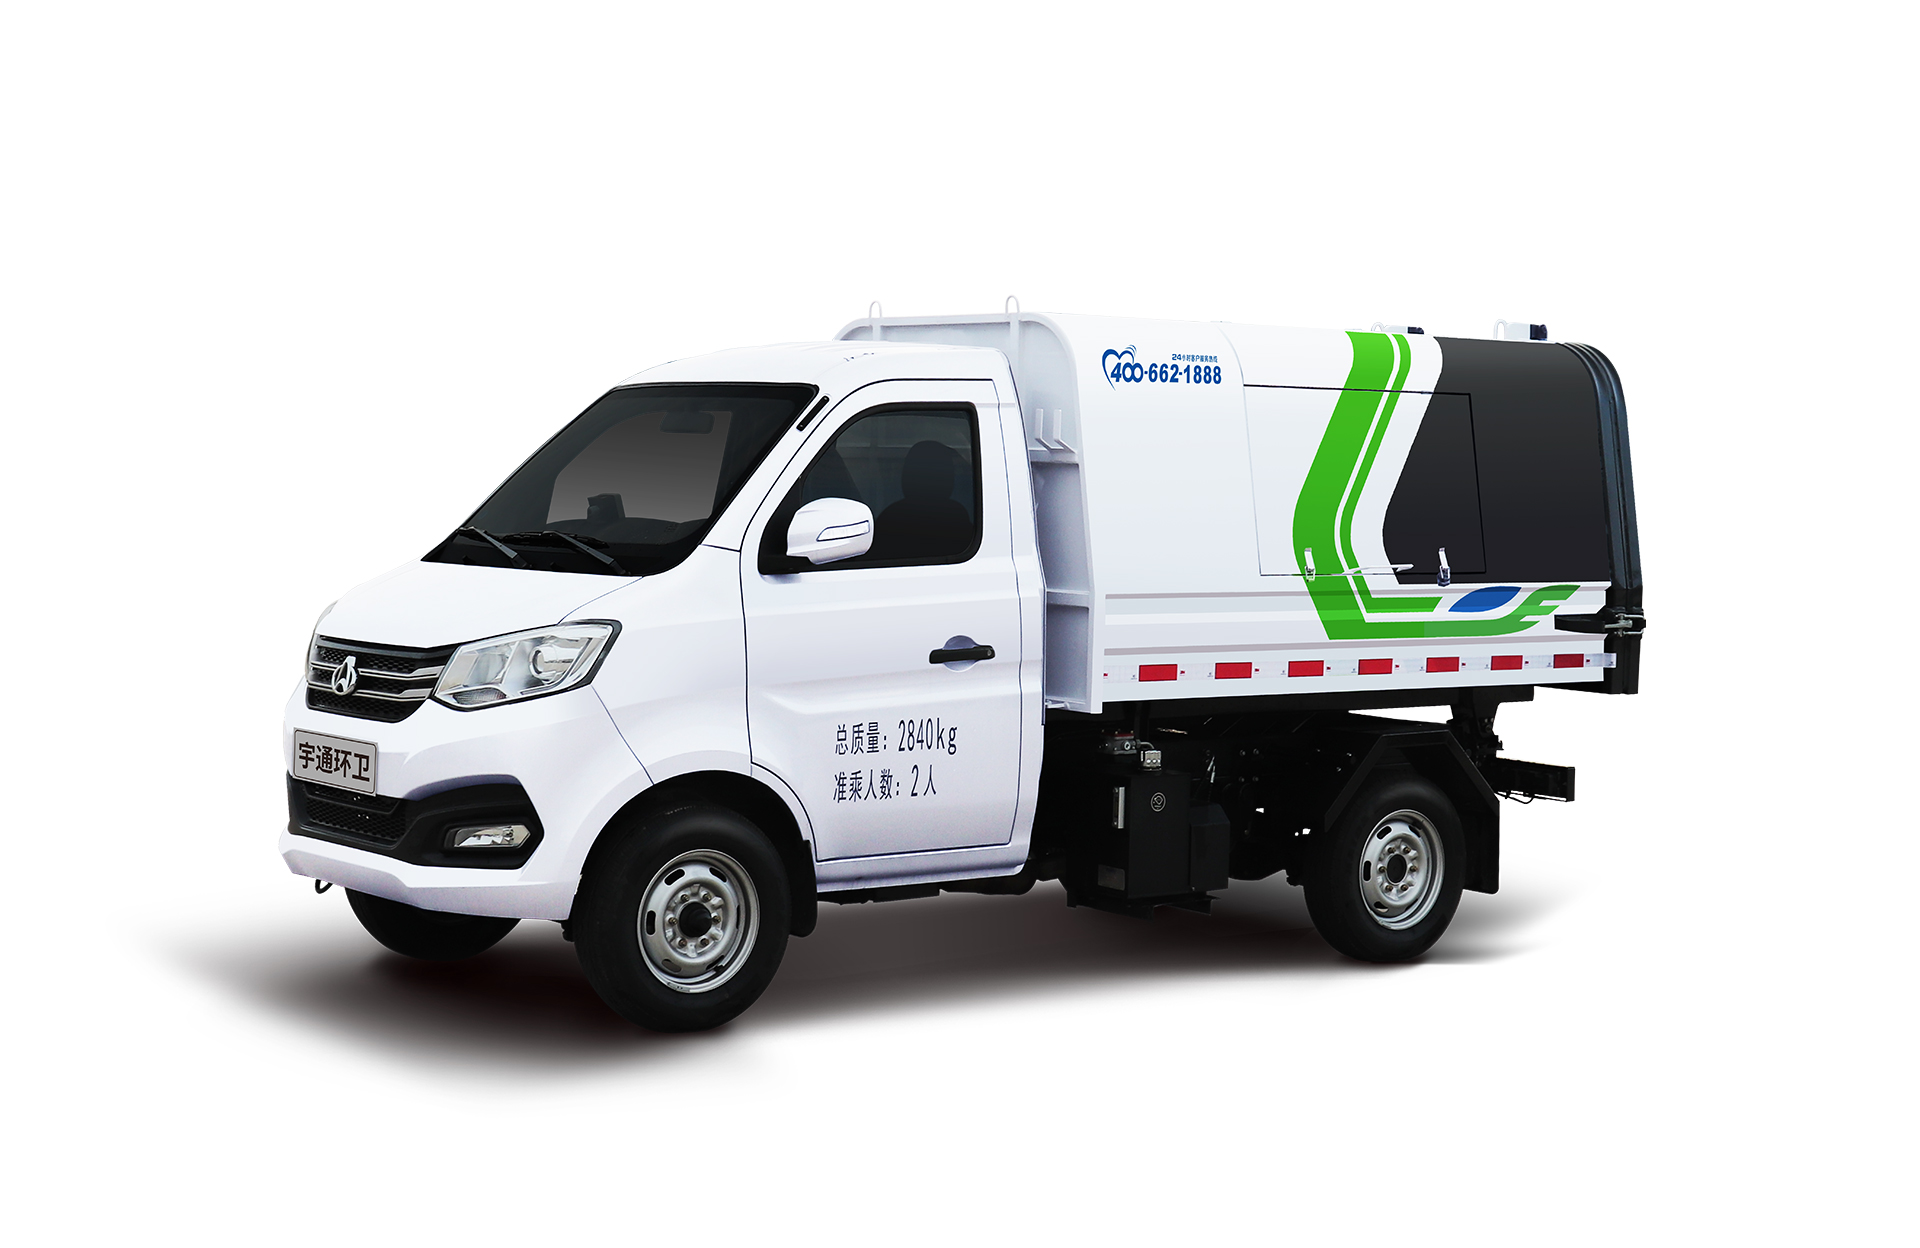 3t自卸式垃圾車 宇通環衛自卸垃圾車主要具備小巧靈活、密封性好、裝載能力強等主要特點。